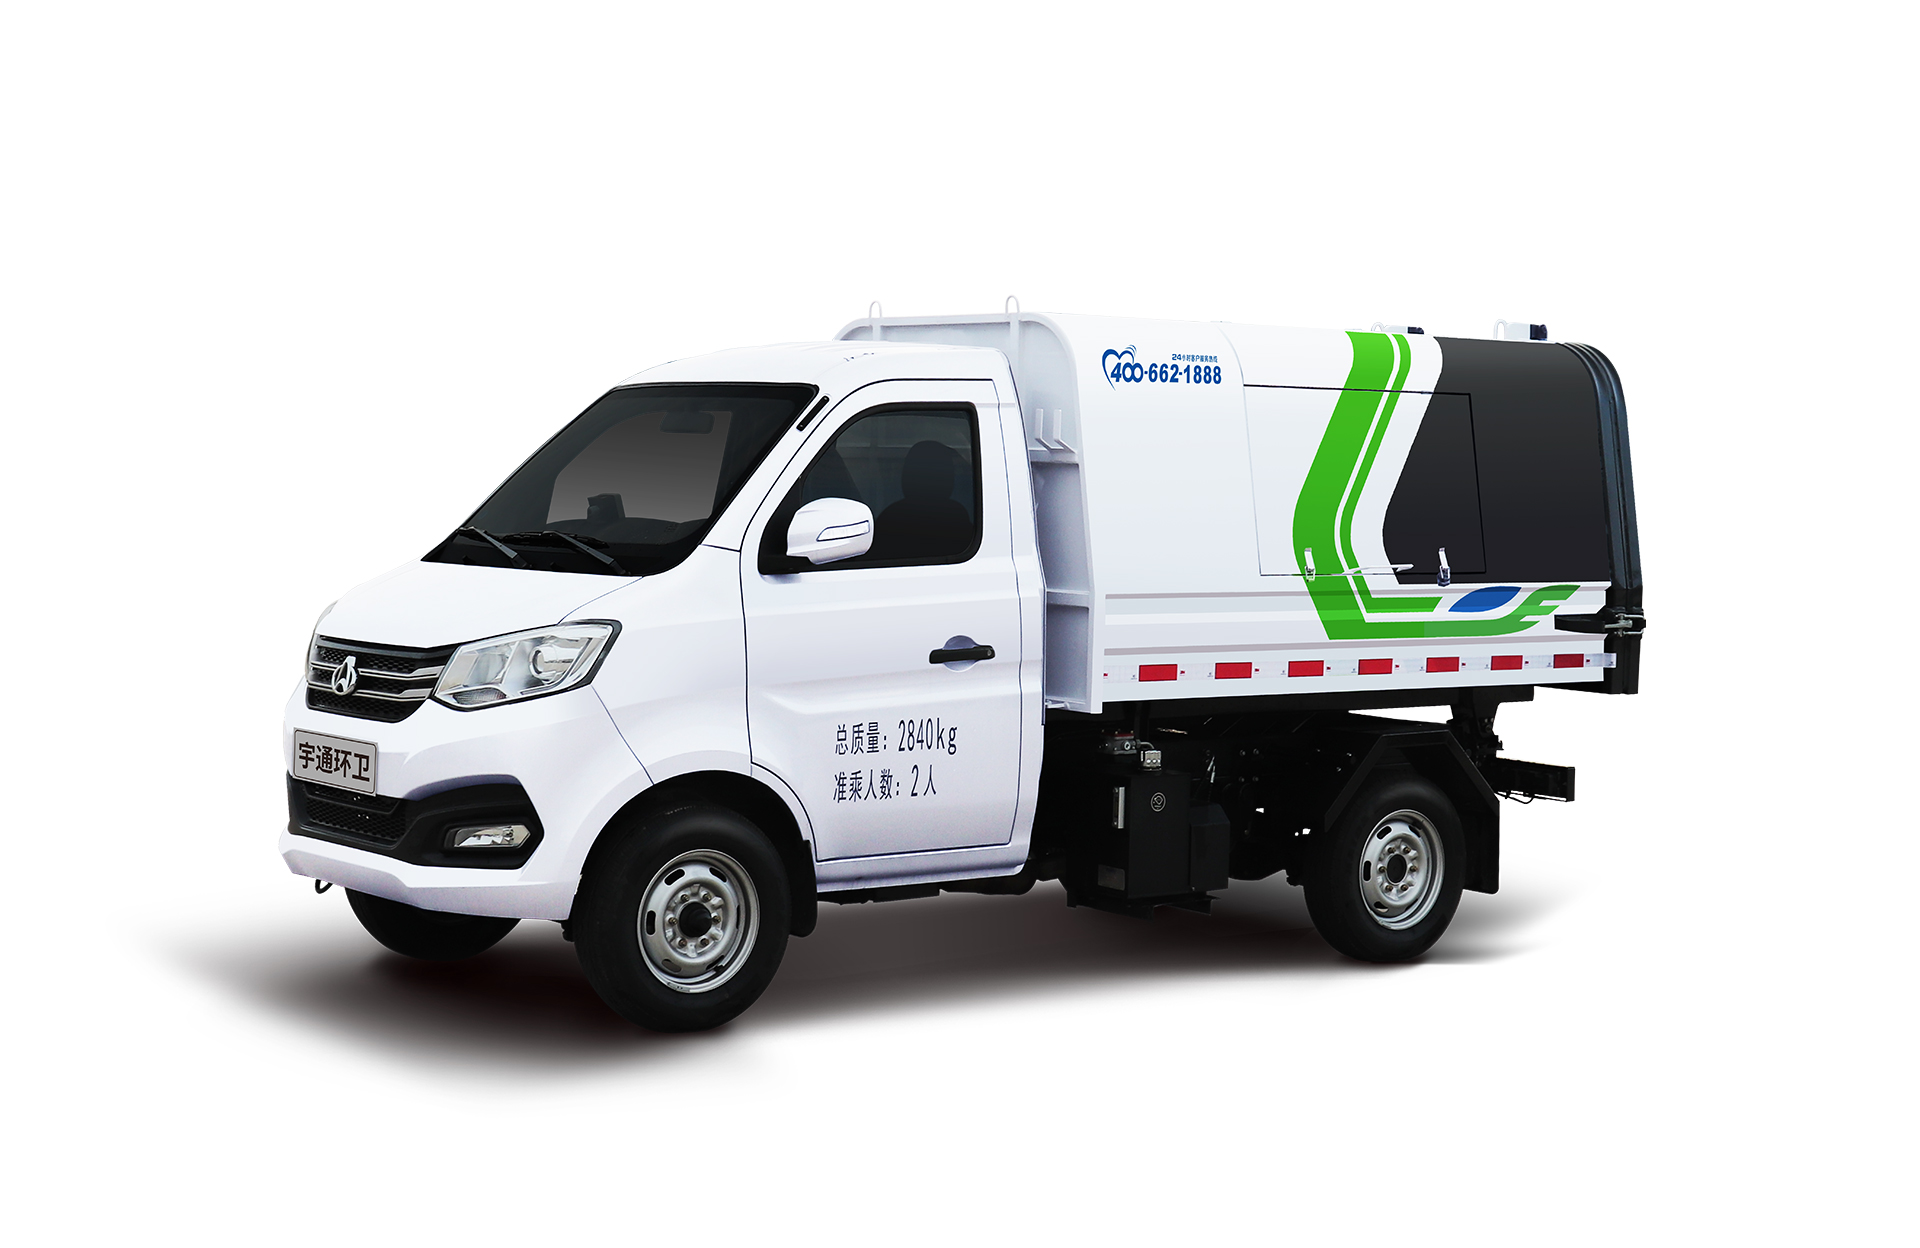 3t自卸式垃圾車 宇通環衛自卸垃圾車主要具備小巧靈活、密封性好、裝載能力強等主要特點。